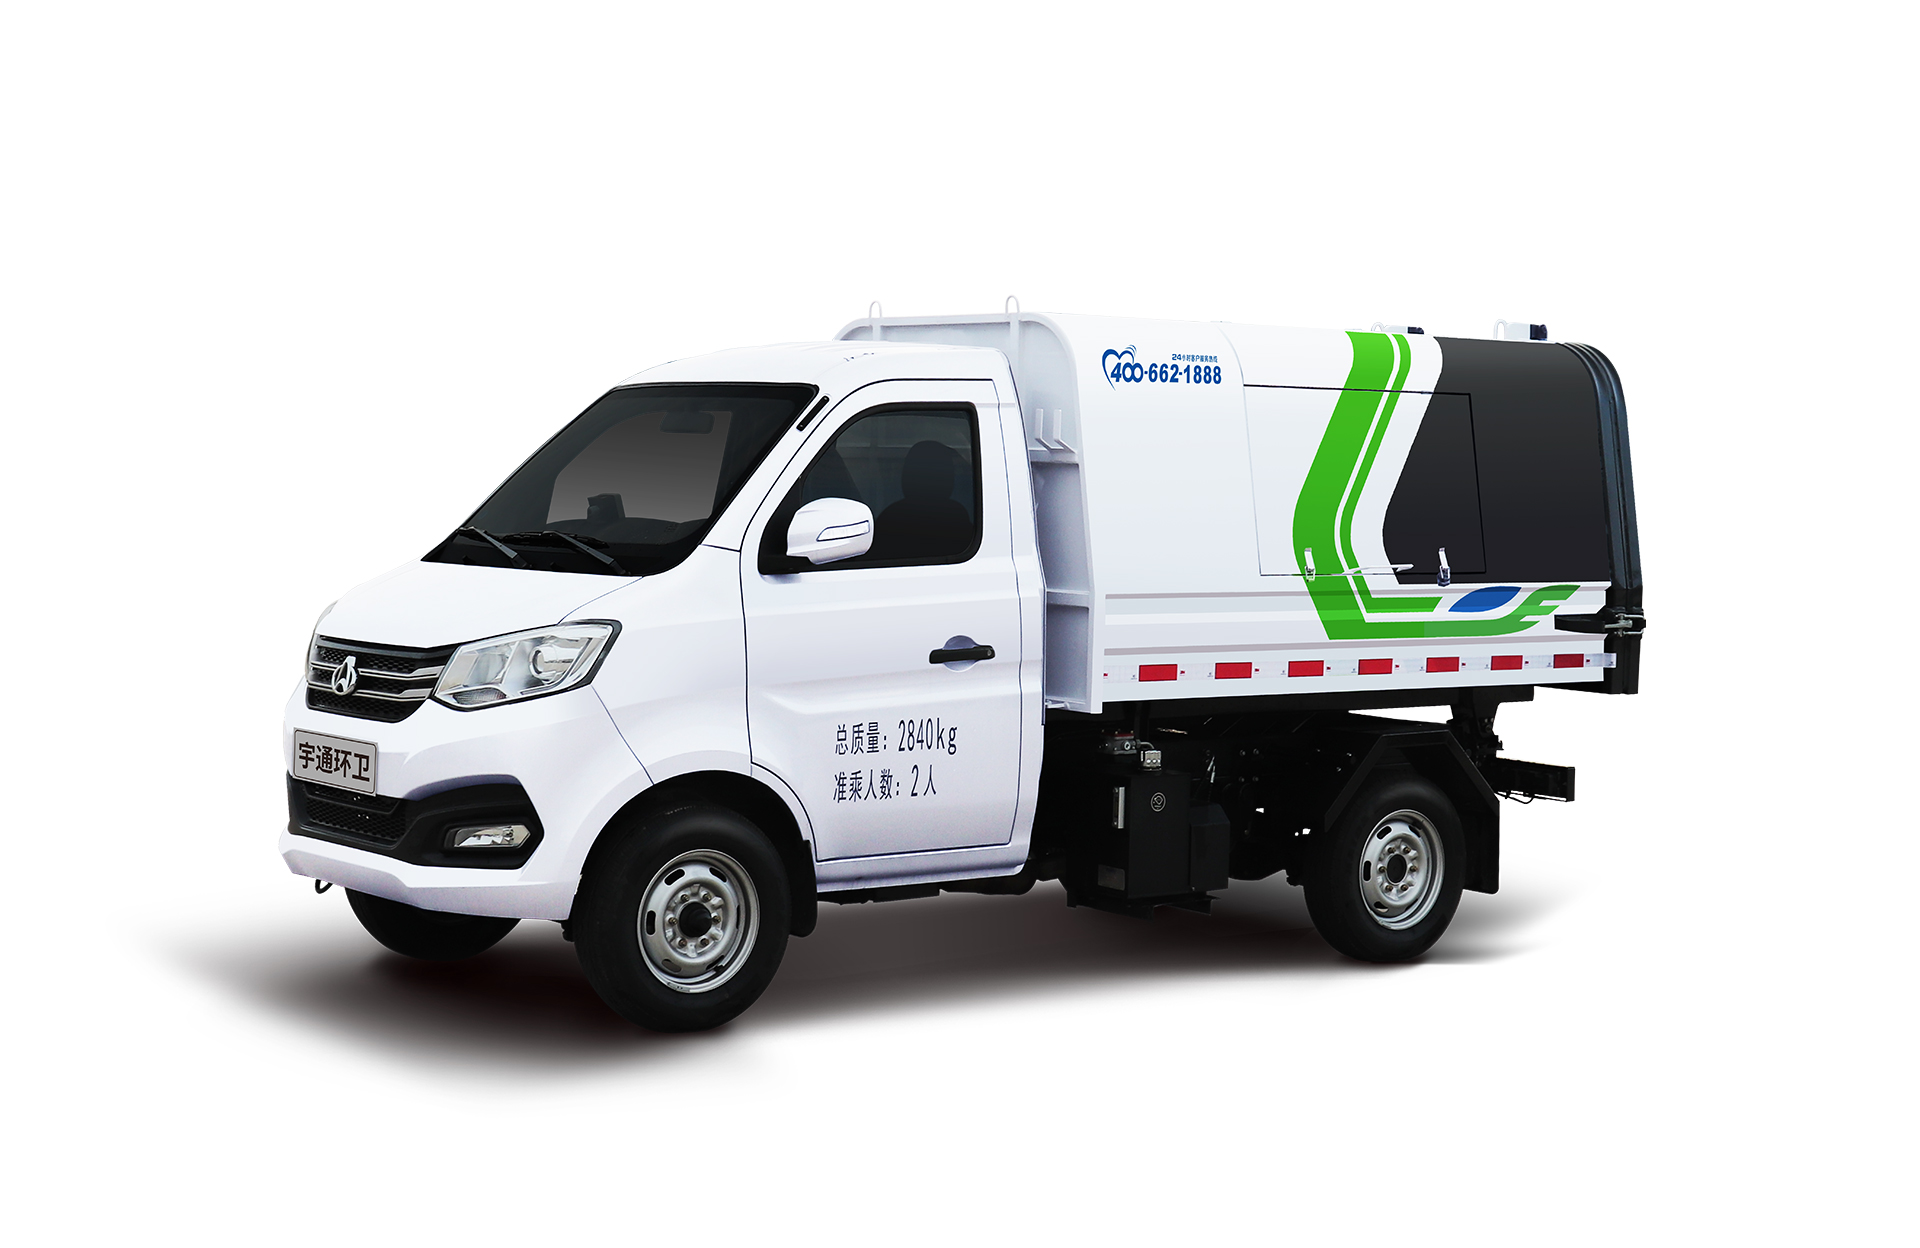 3t自卸式垃圾車 宇通環衛自卸垃圾車主要具備小巧靈活、密封性好、裝載能力強等主要特點。